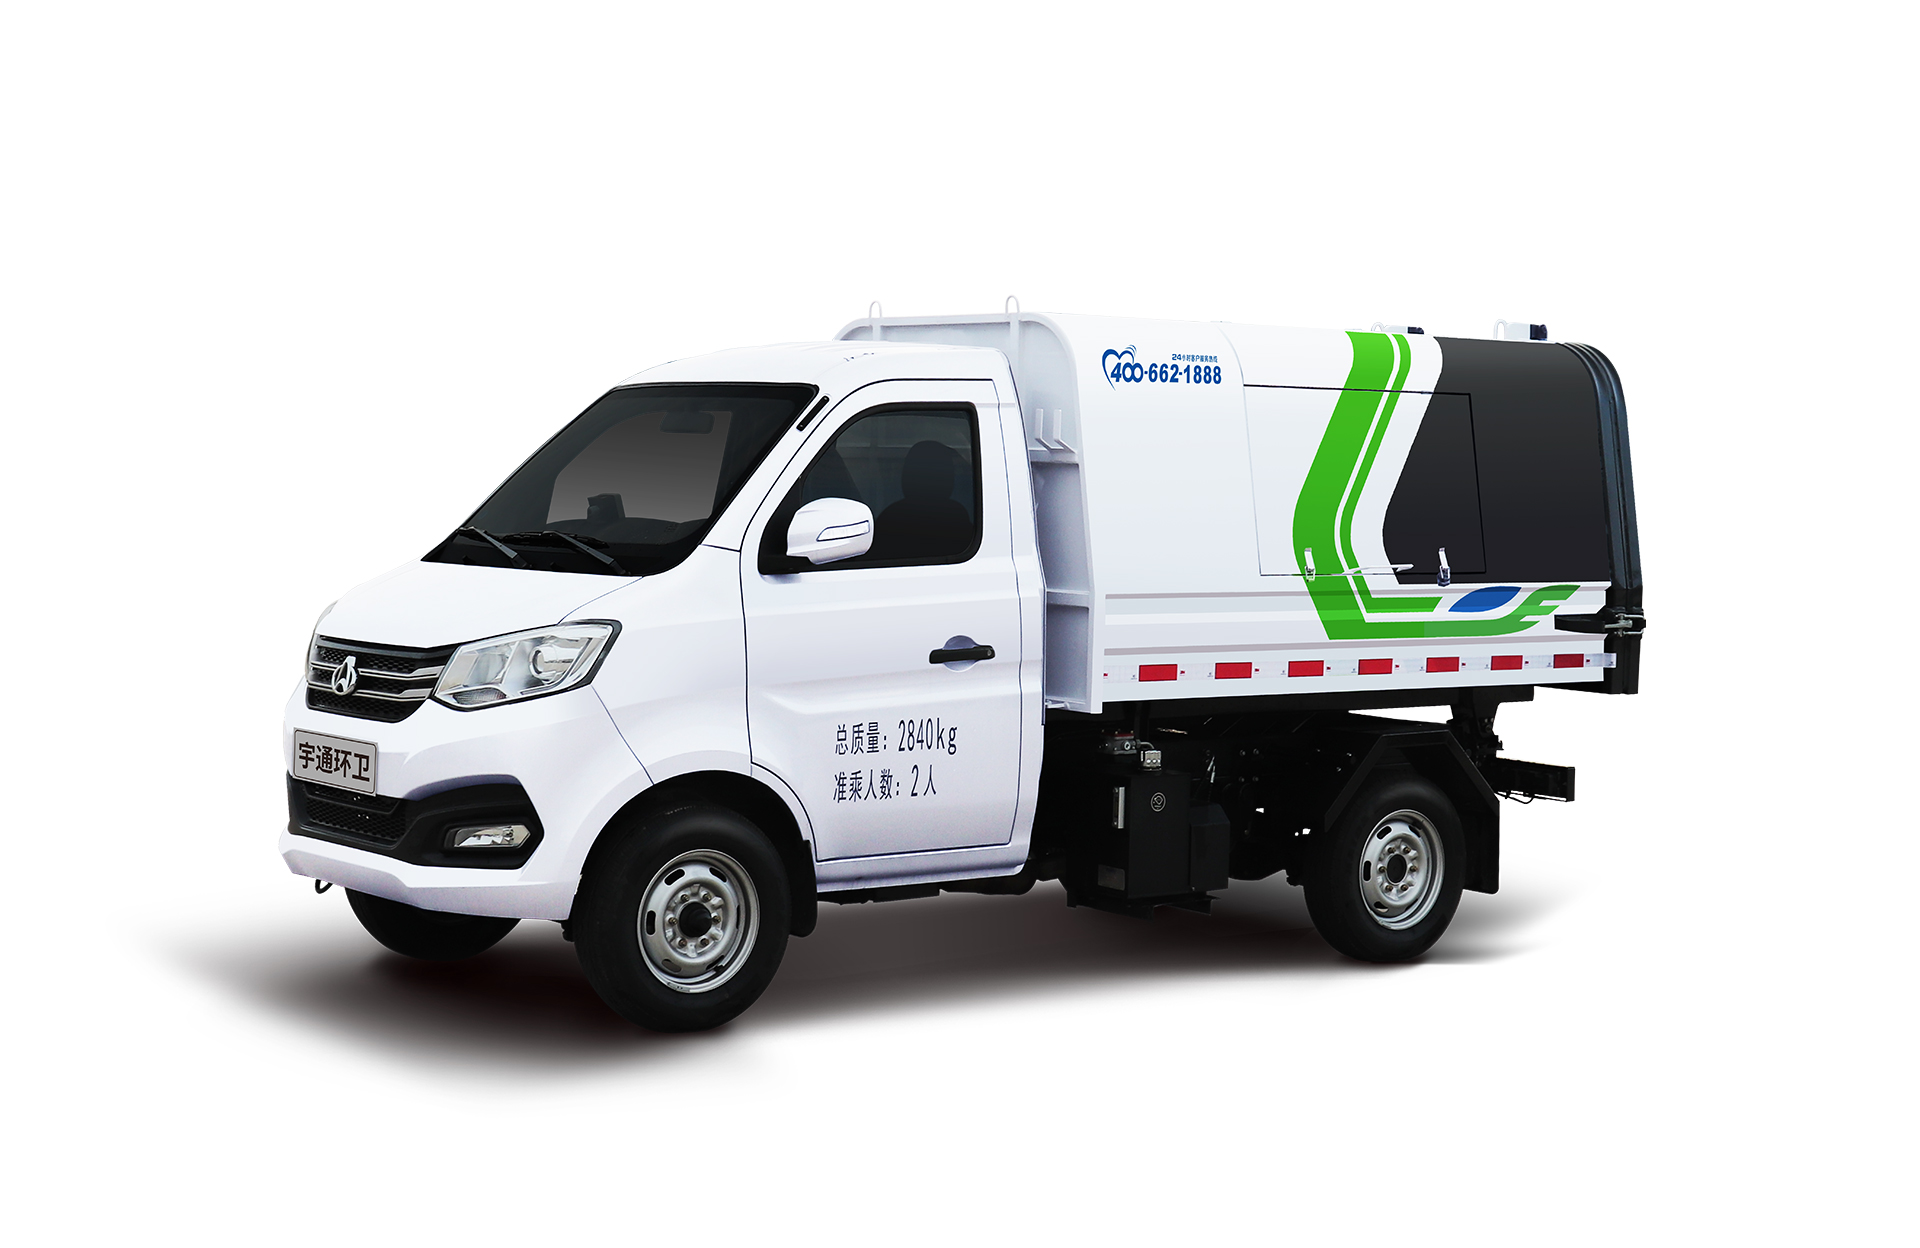 3t自卸式垃圾車 宇通環衛自卸垃圾車主要具備小巧靈活、密封性好、裝載能力強等主要特點。